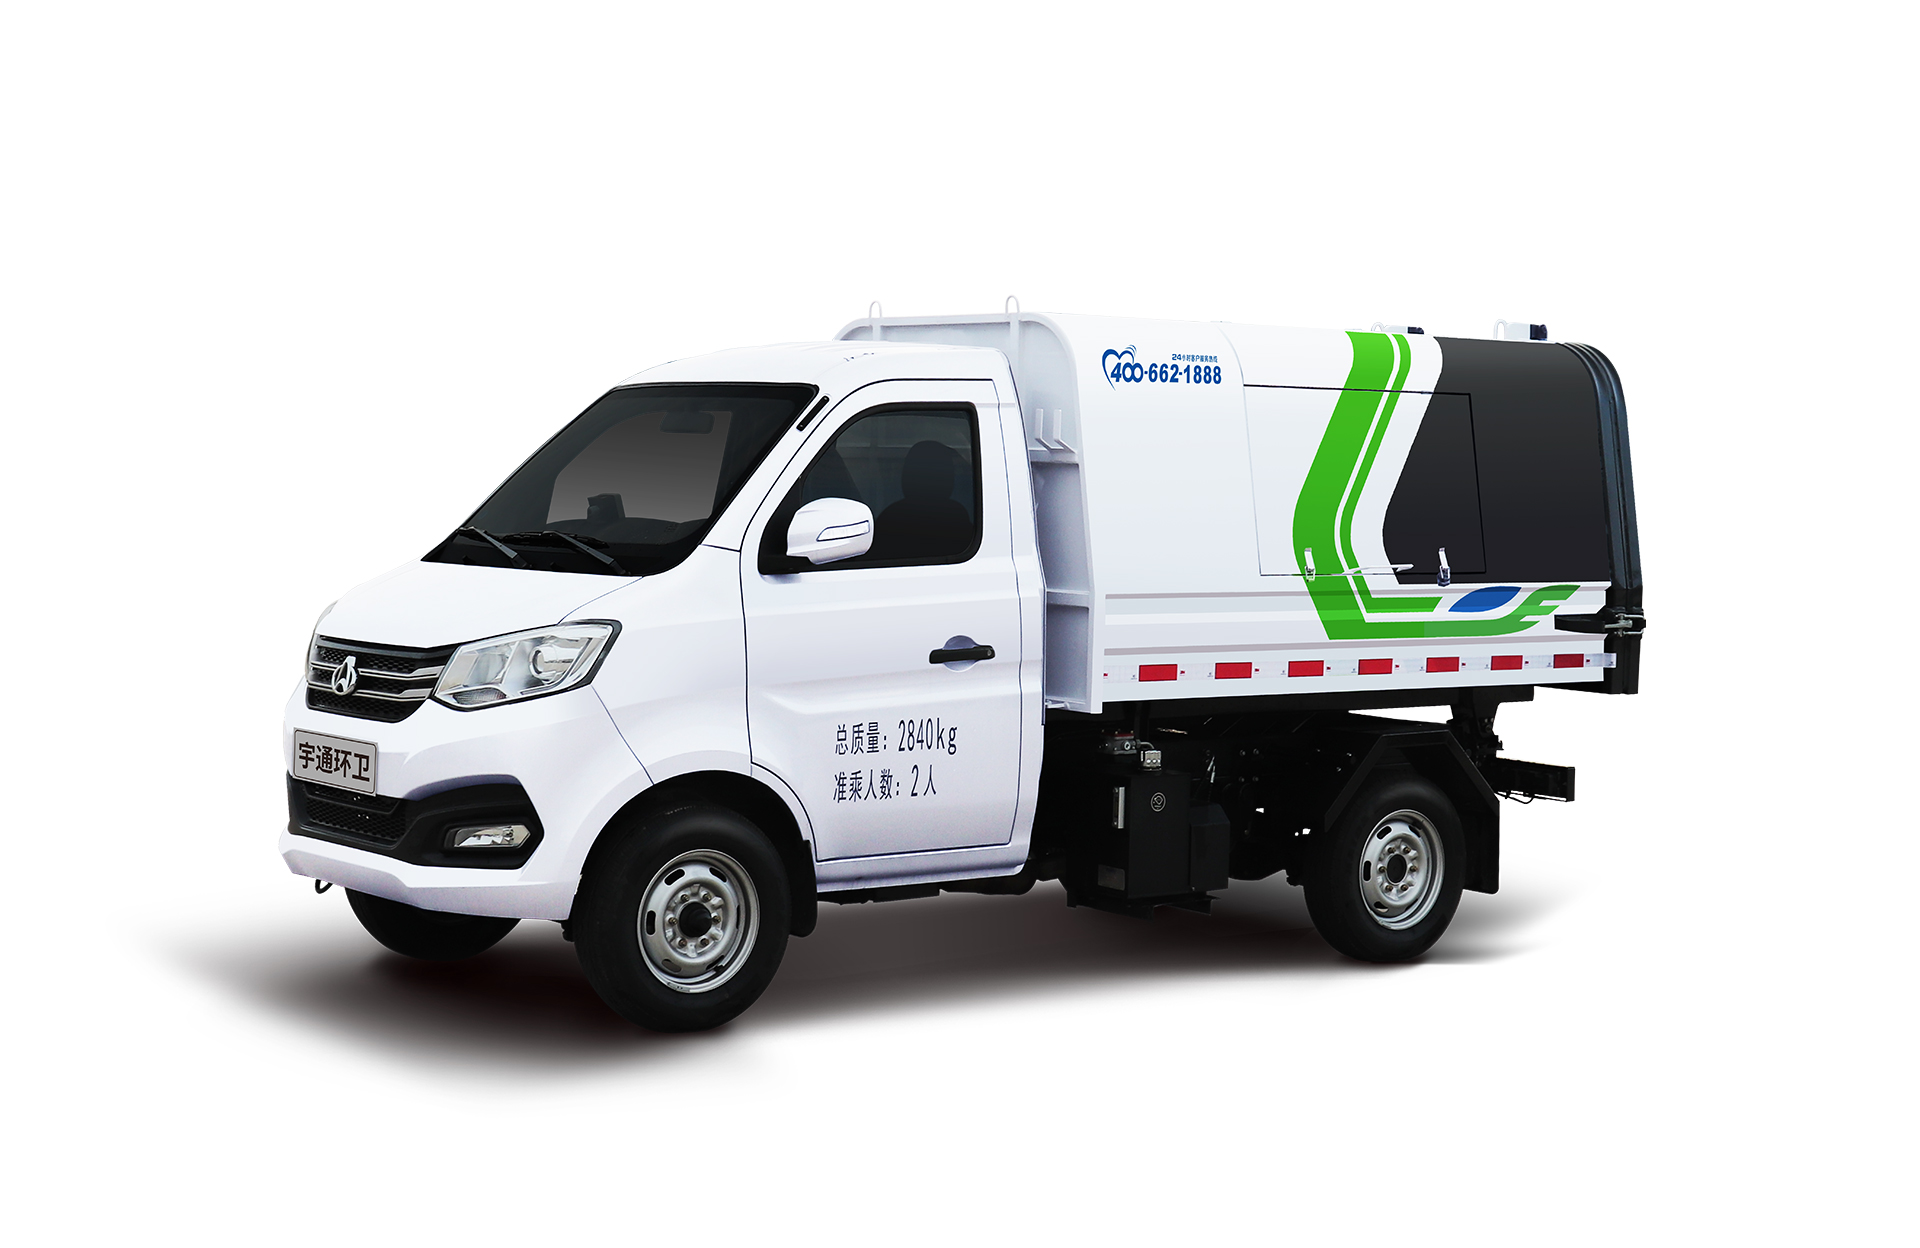 3t自卸式垃圾車 宇通環衛自卸垃圾車主要具備小巧靈活、密封性好、裝載能力強等主要特點。